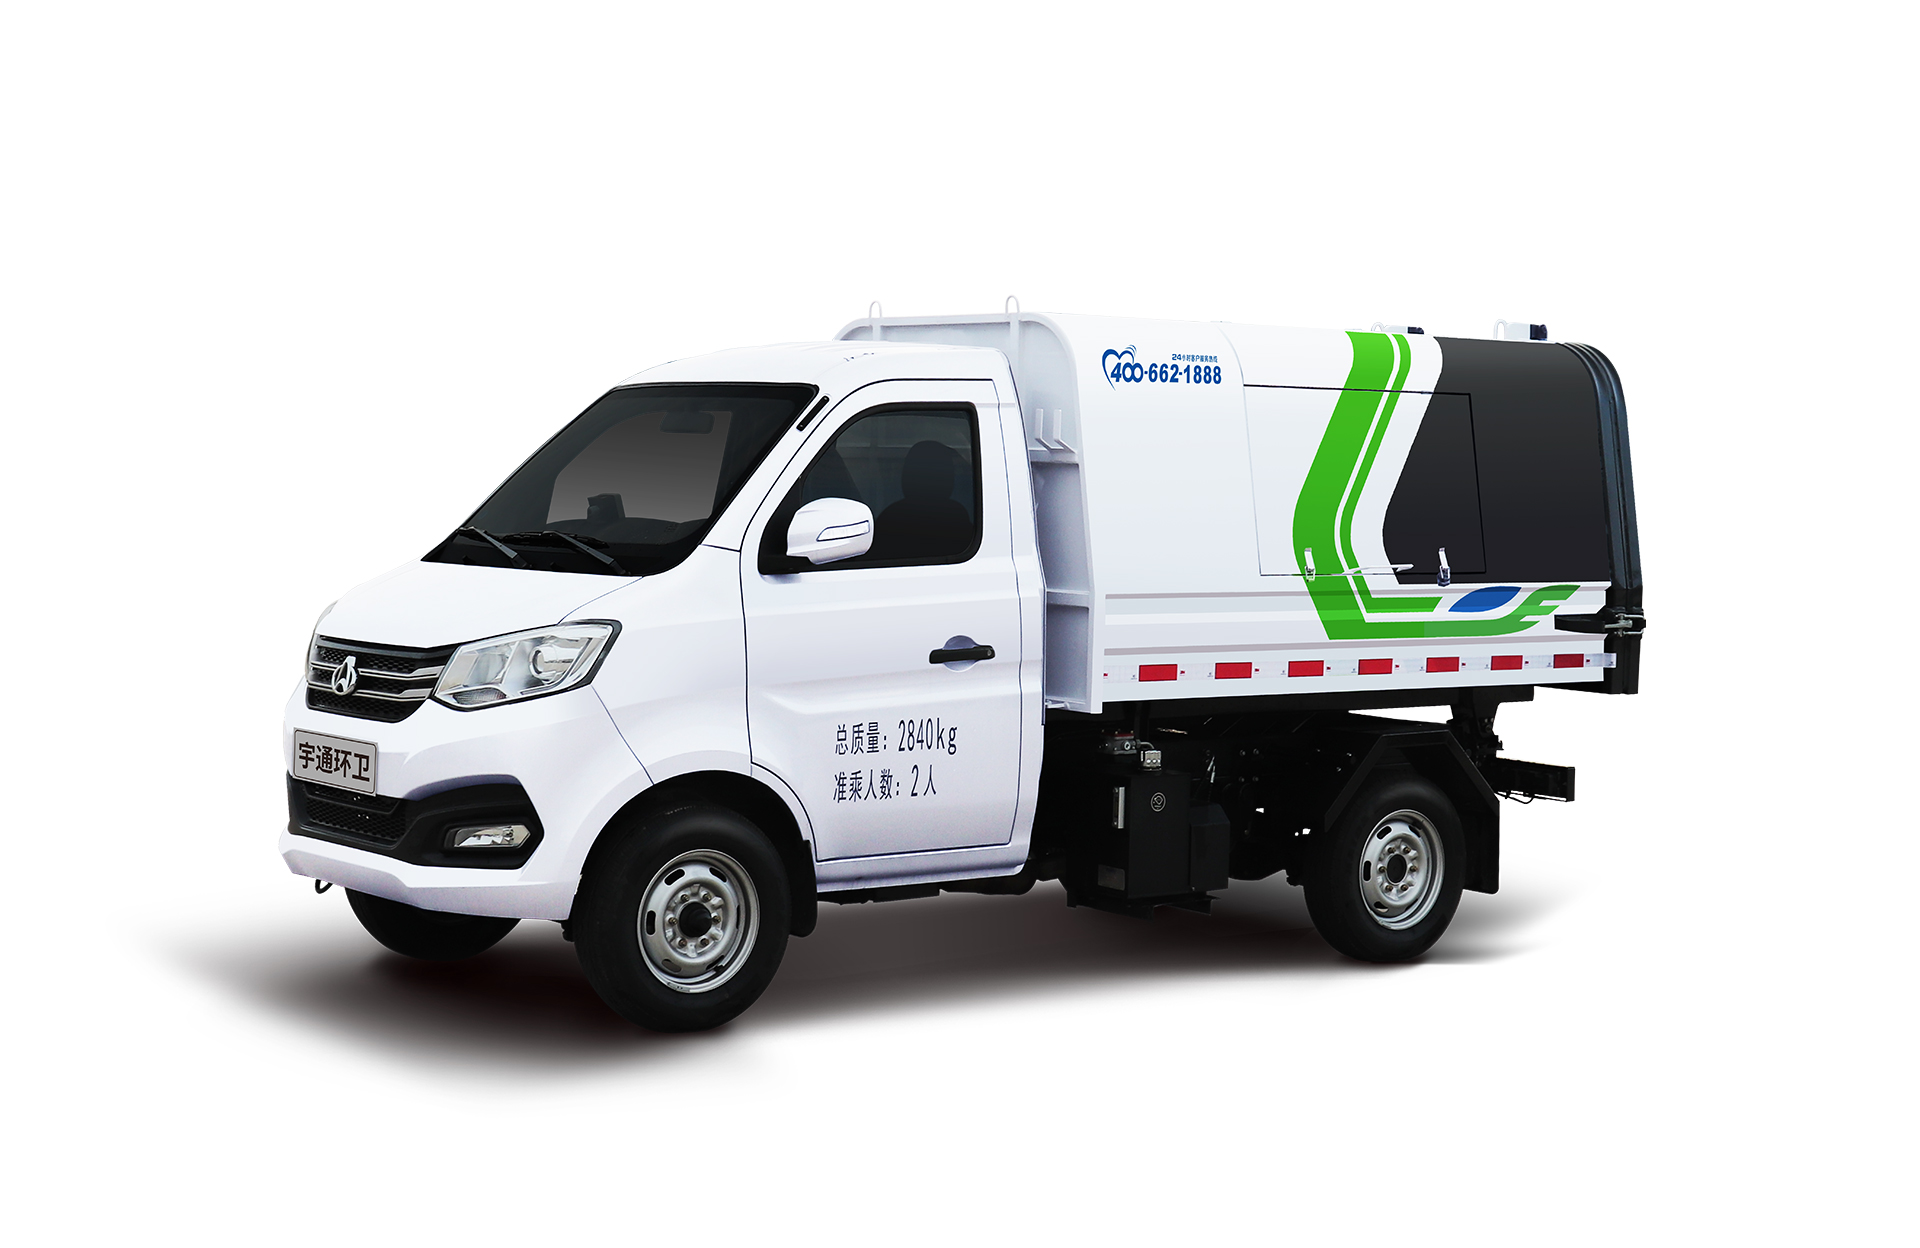 3t自卸式垃圾車 宇通環衛自卸垃圾車主要具備小巧靈活、密封性好、裝載能力強等主要特點。